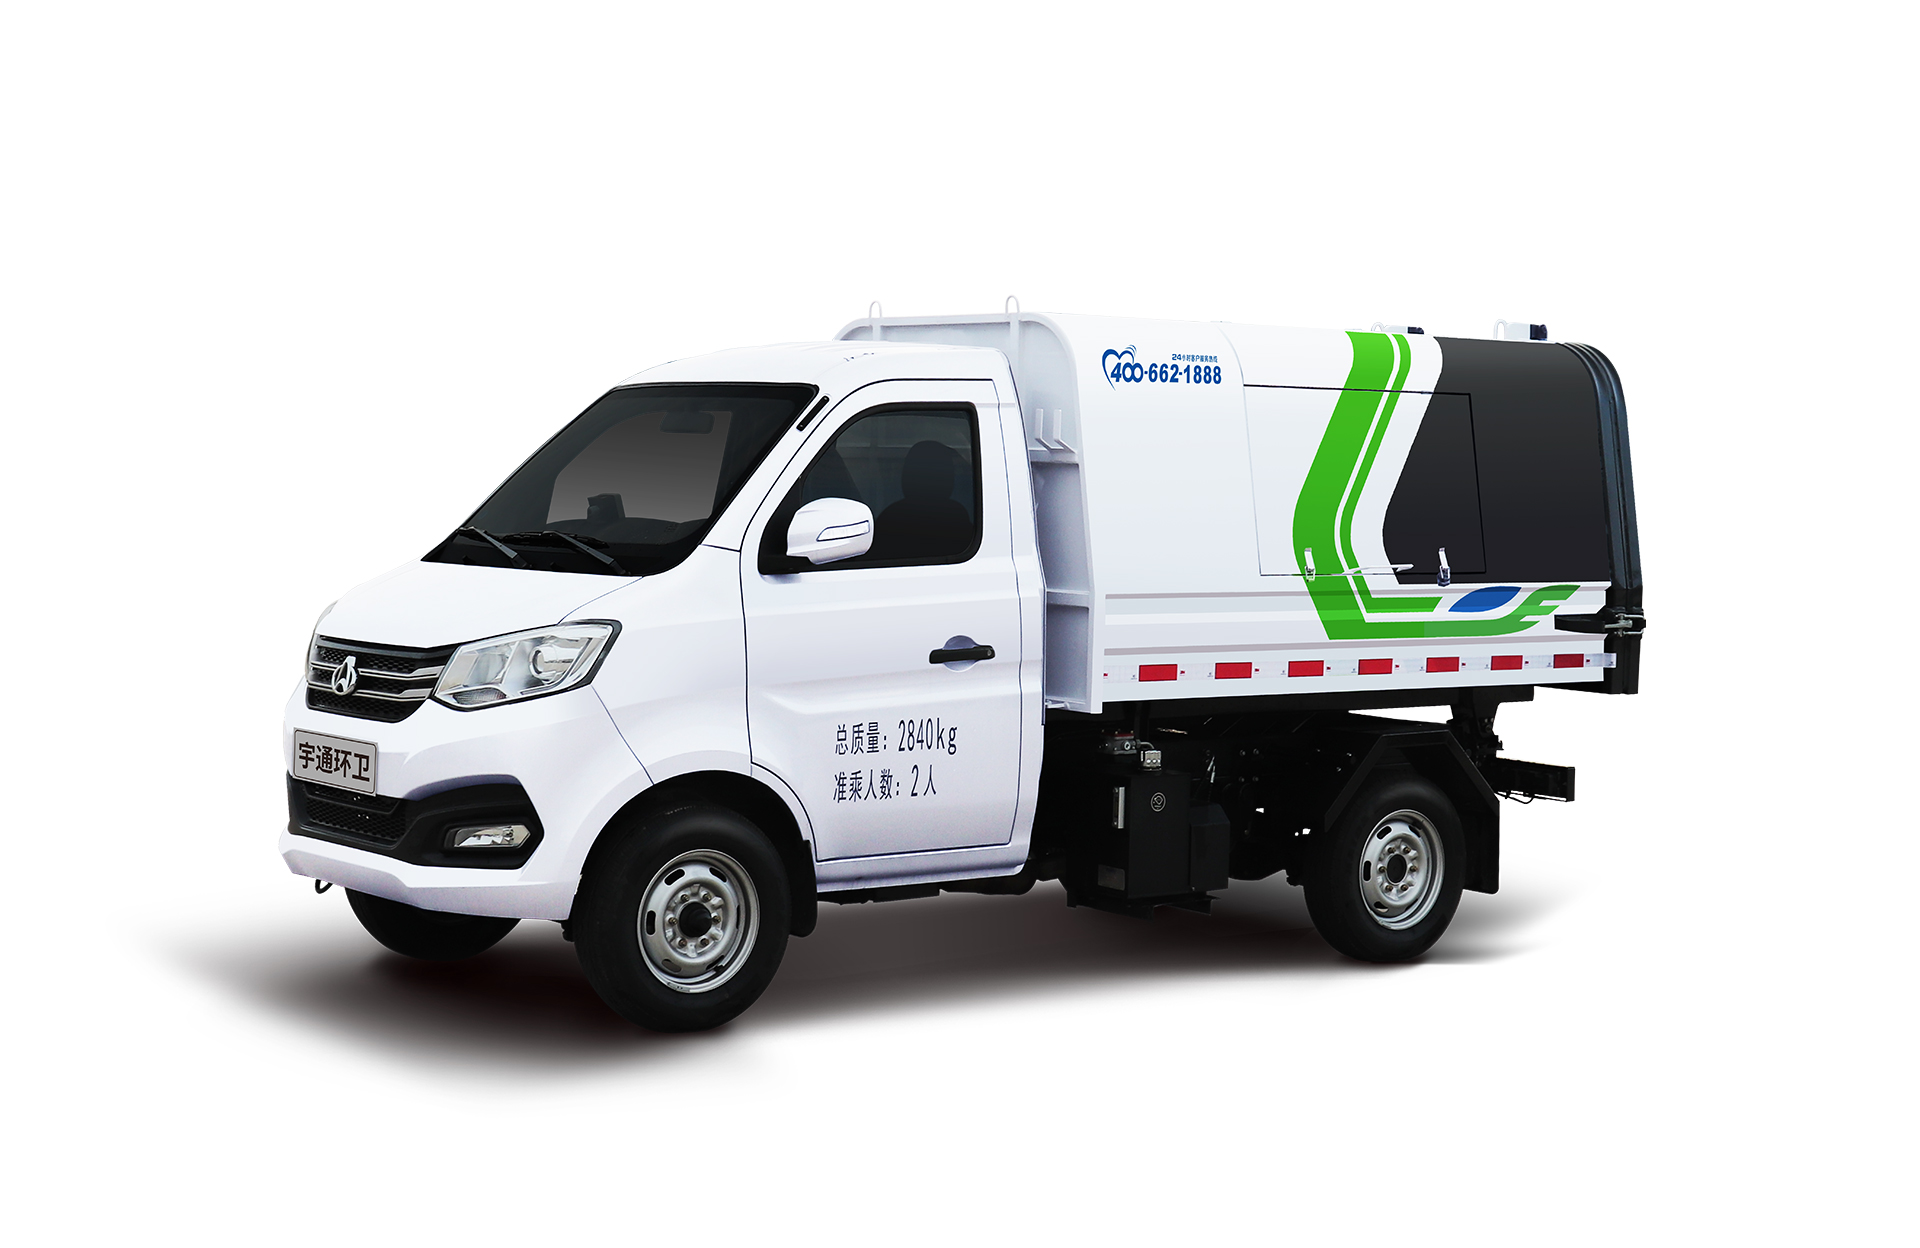 3t自卸式垃圾車 宇通環衛自卸垃圾車主要具備小巧靈活、密封性好、裝載能力強等主要特點。